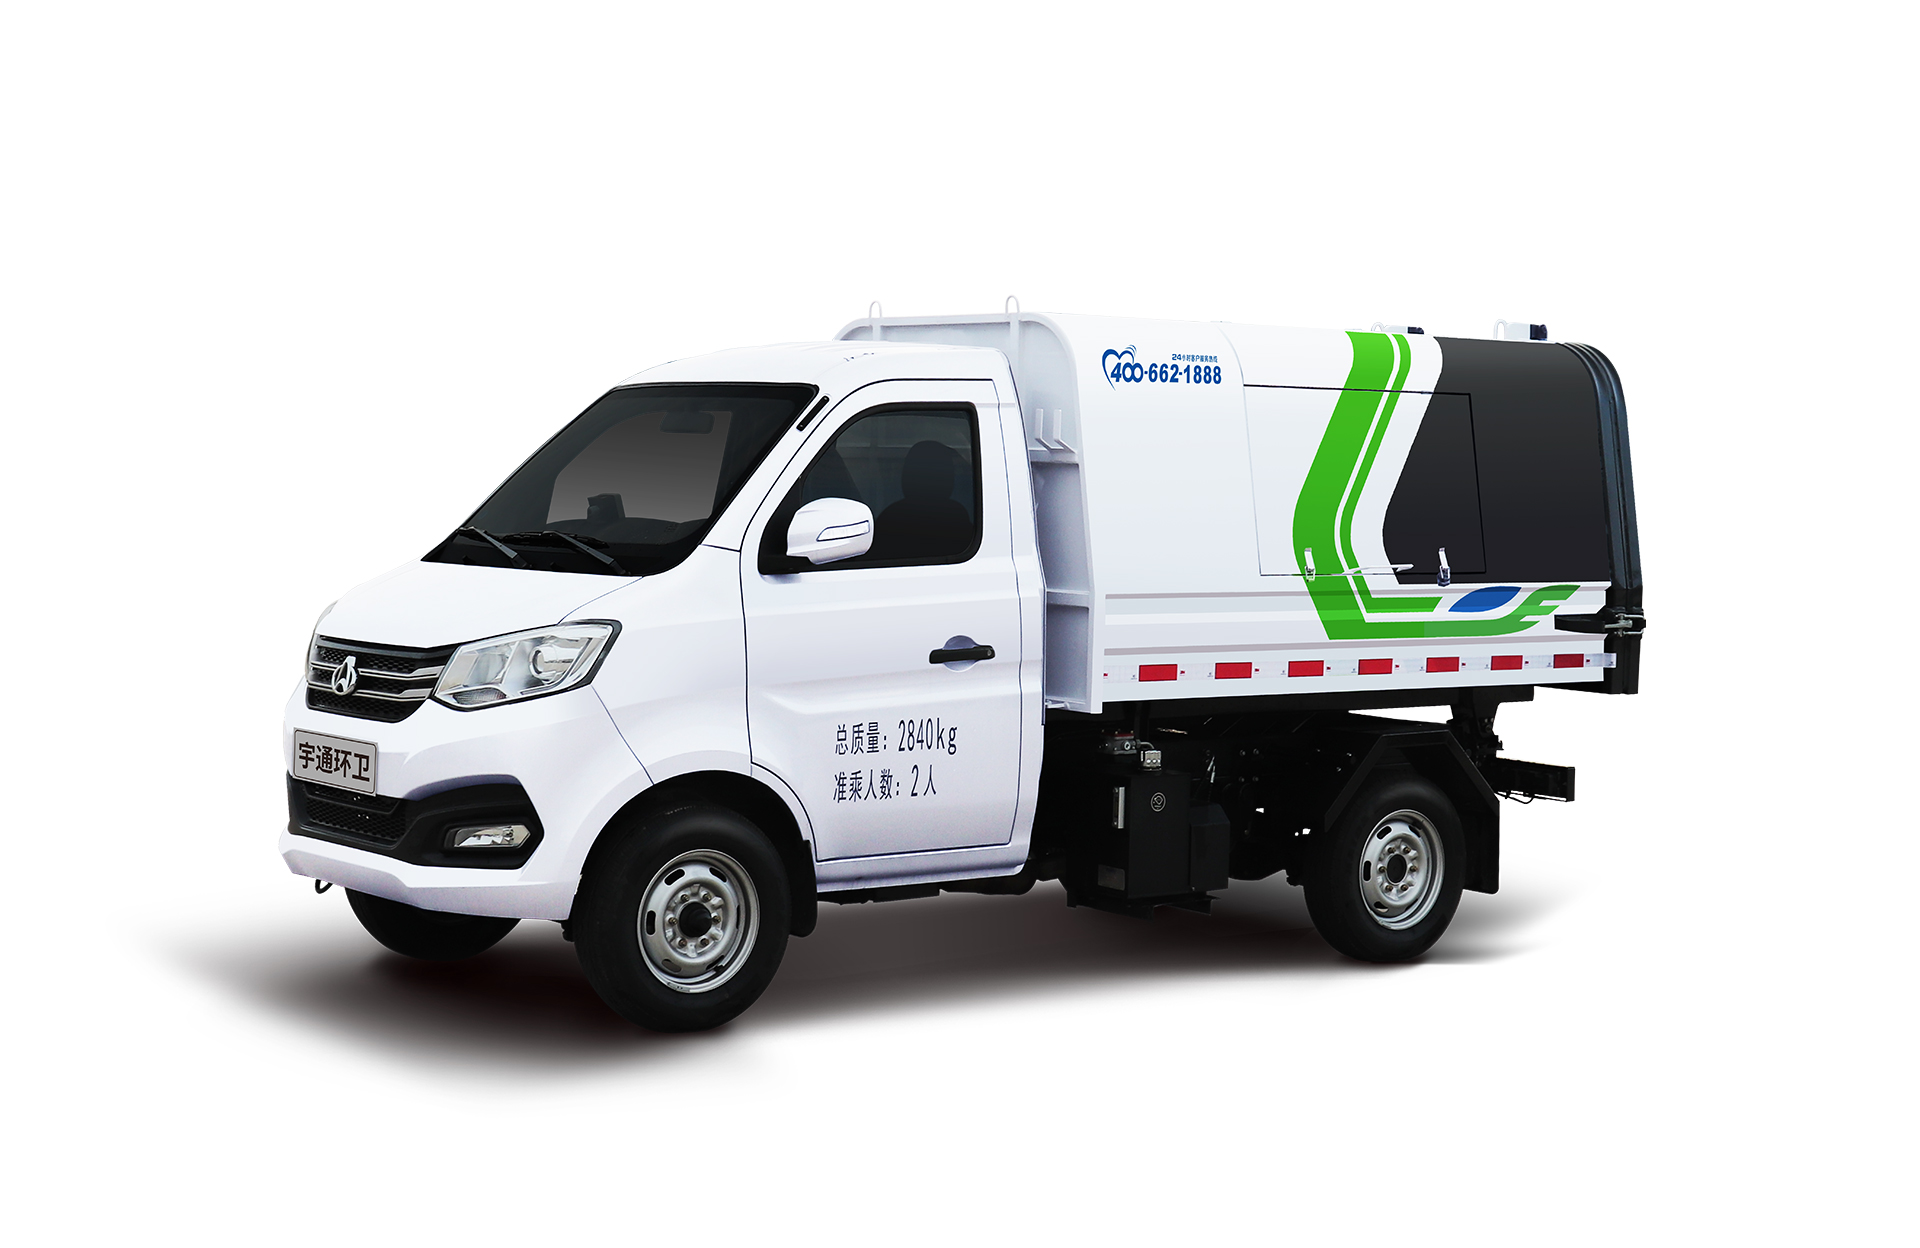 3t自卸式垃圾車 宇通環衛自卸垃圾車主要具備小巧靈活、密封性好、裝載能力強等主要特點。